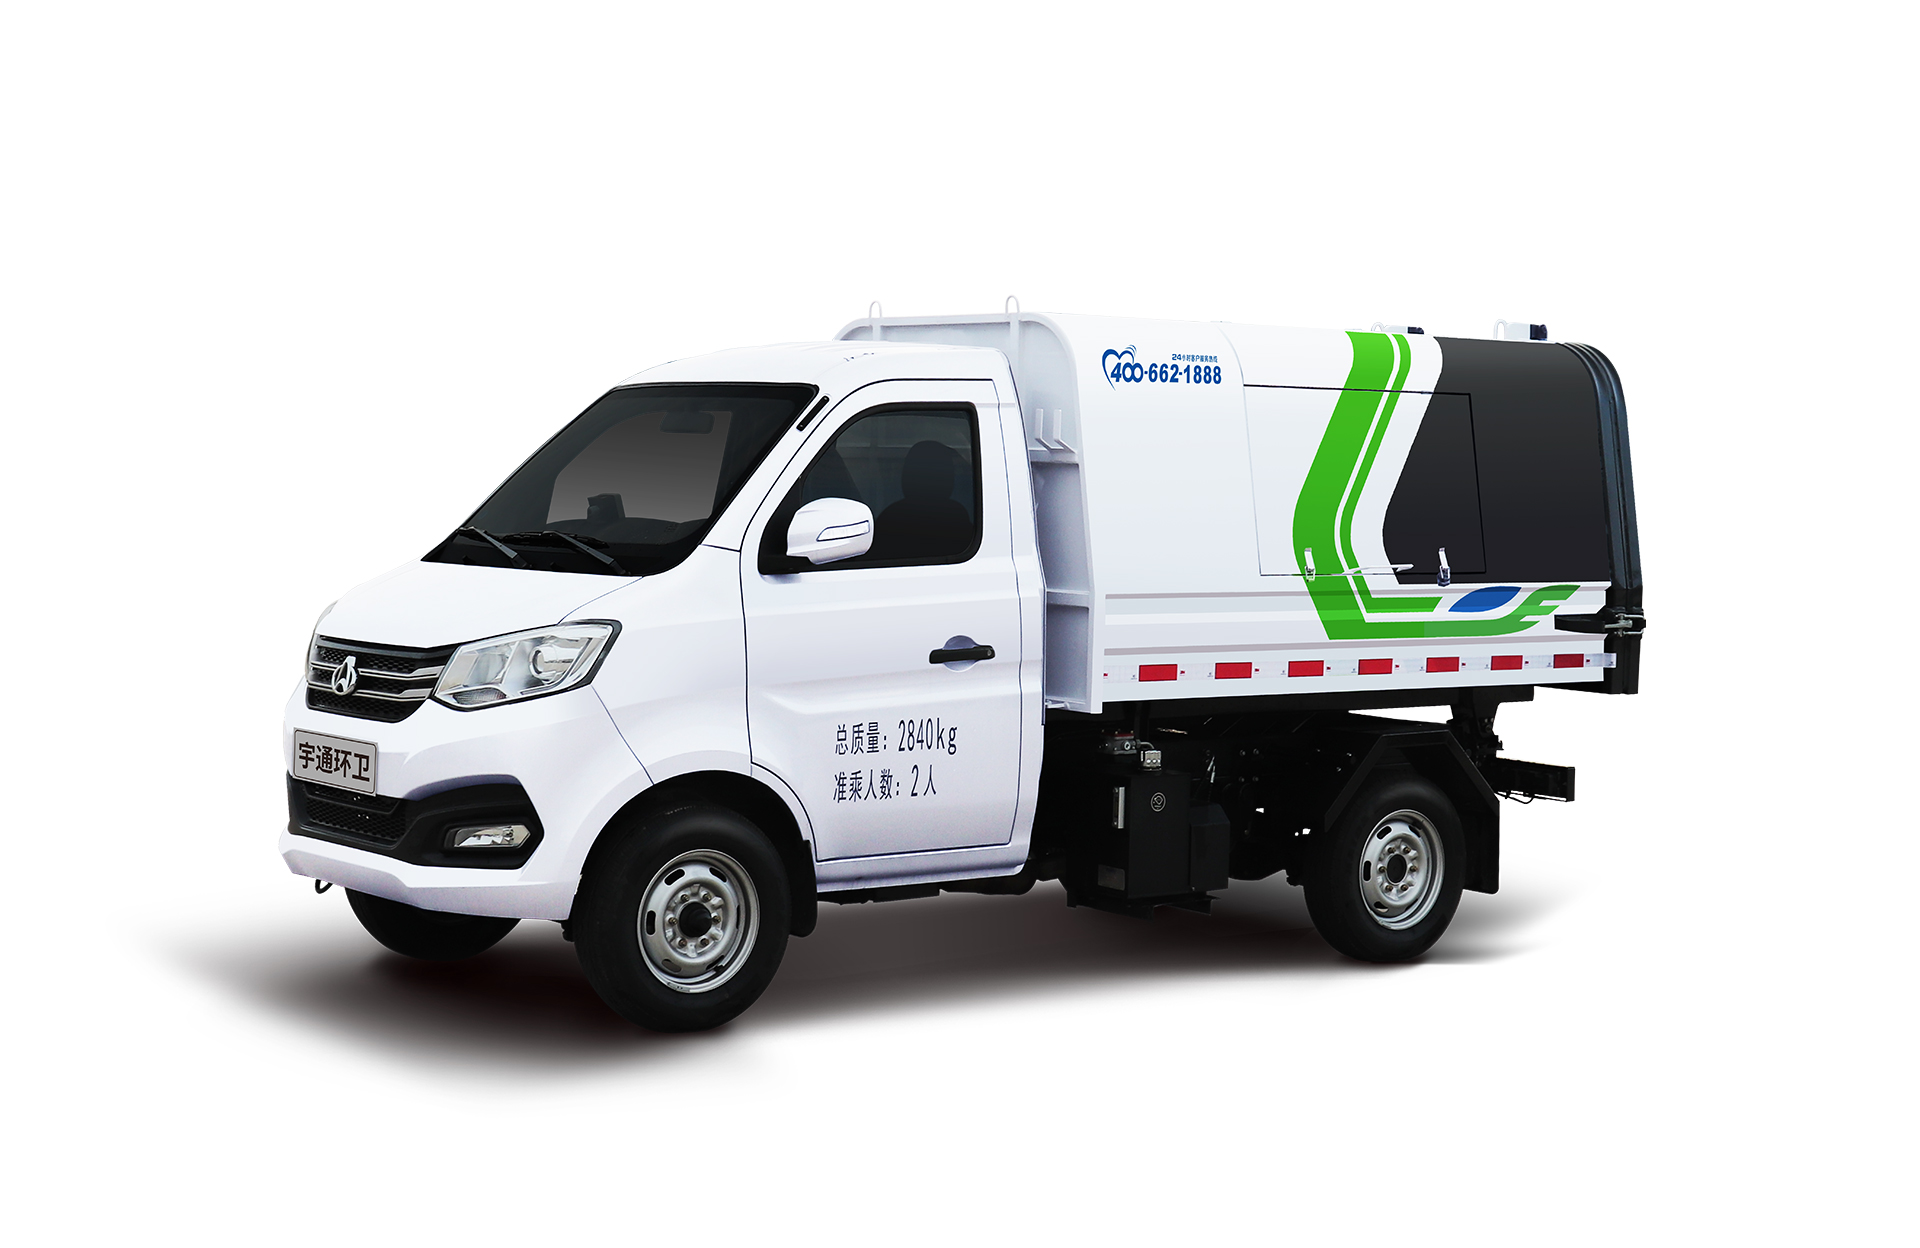 3t自卸式垃圾車 宇通環衛自卸垃圾車主要具備小巧靈活、密封性好、裝載能力強等主要特點。